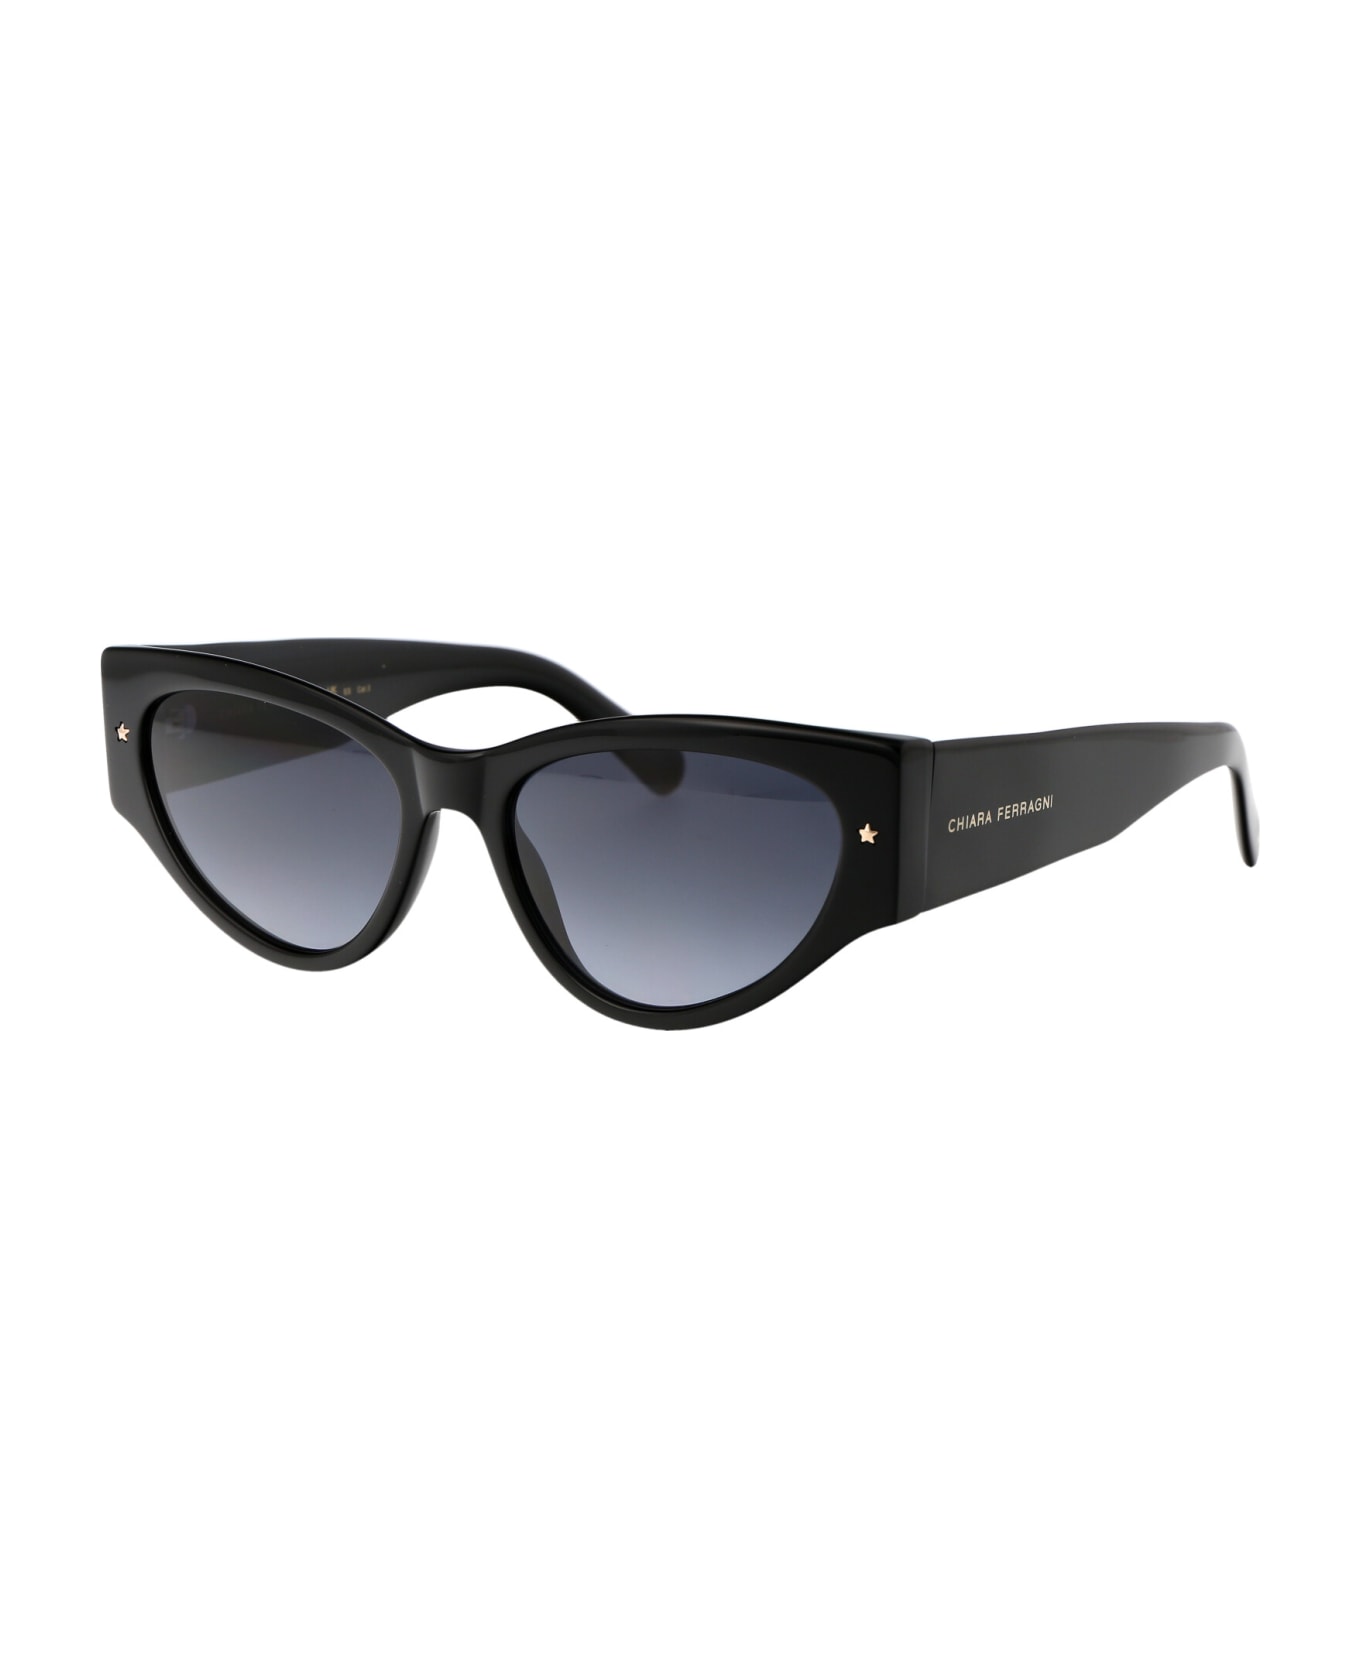 Chiara Ferragni Cf 7032/s Sunglasses - 8079O BLACK